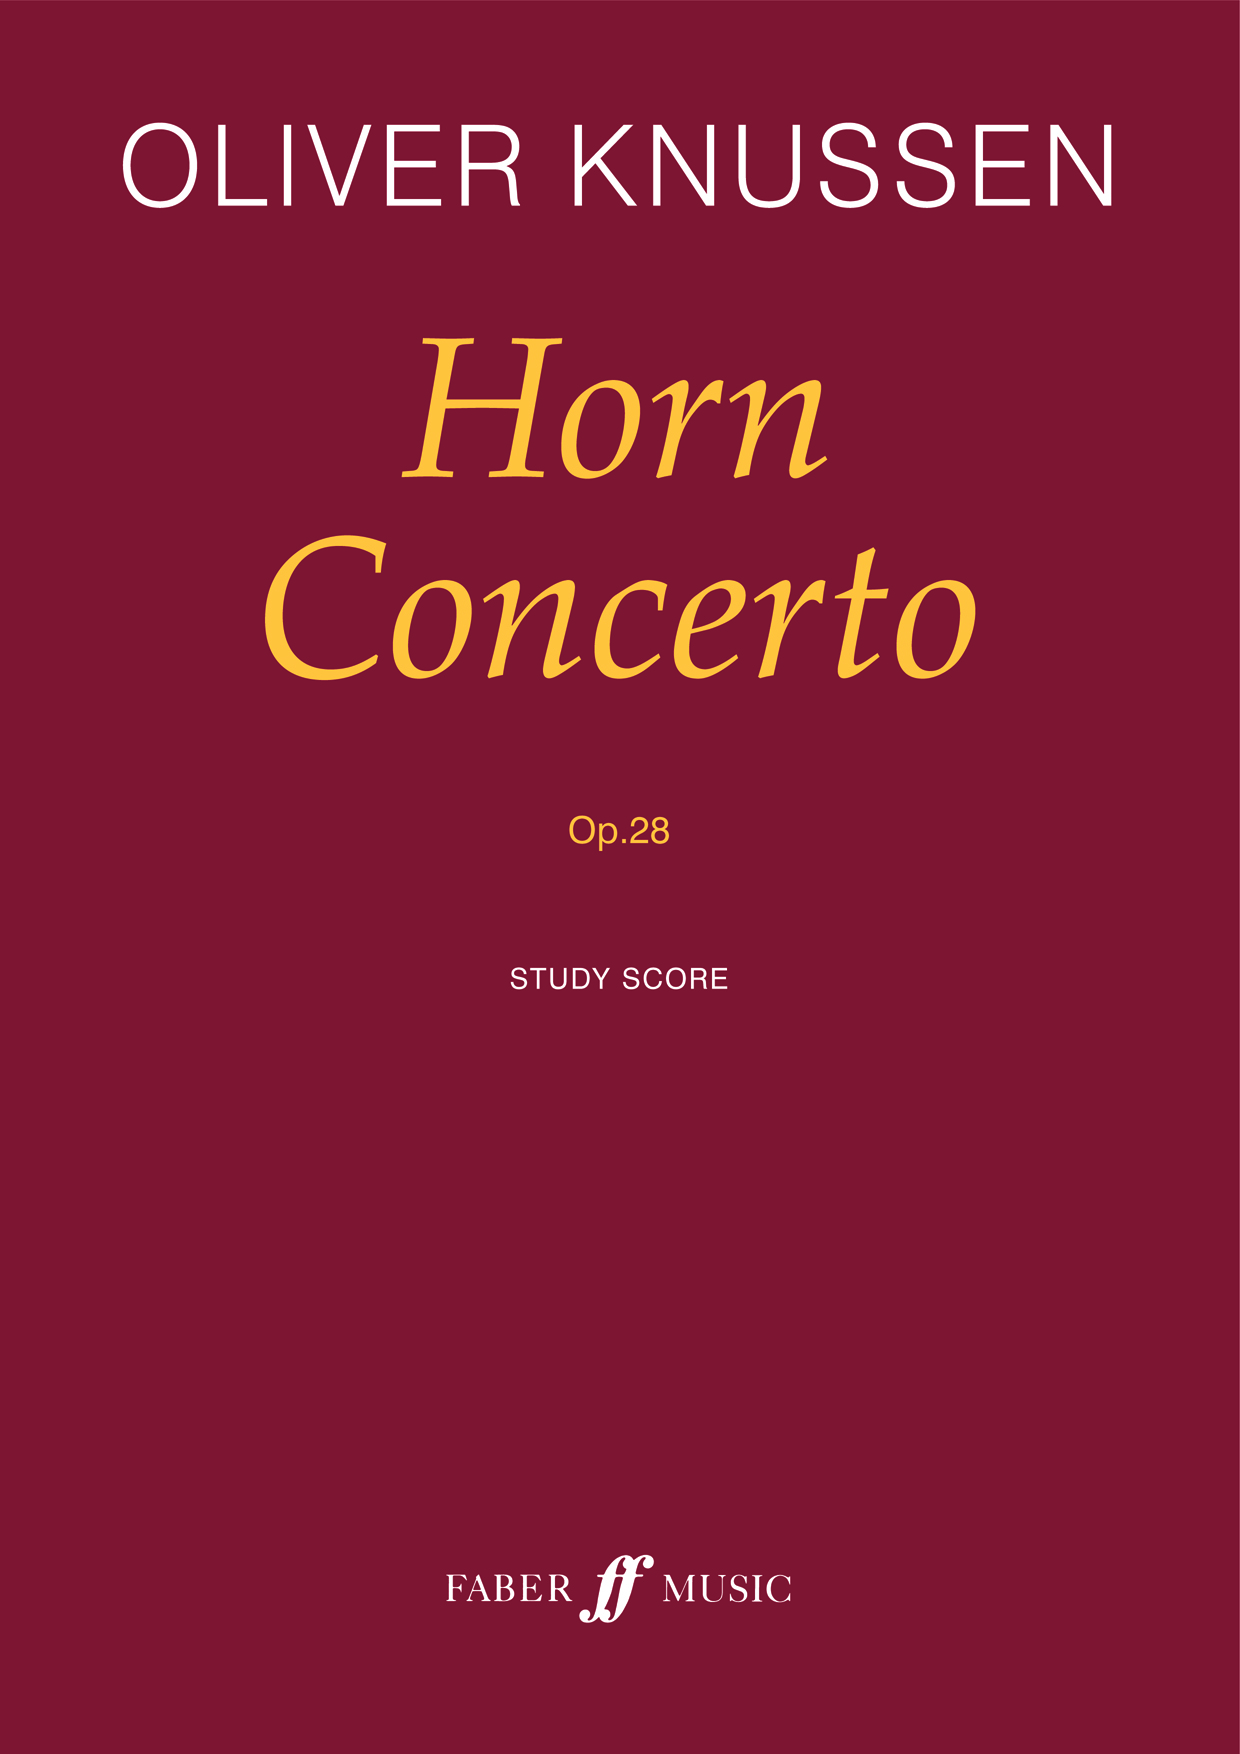 Oliver Knussen: Horn Concerto: Orchestra